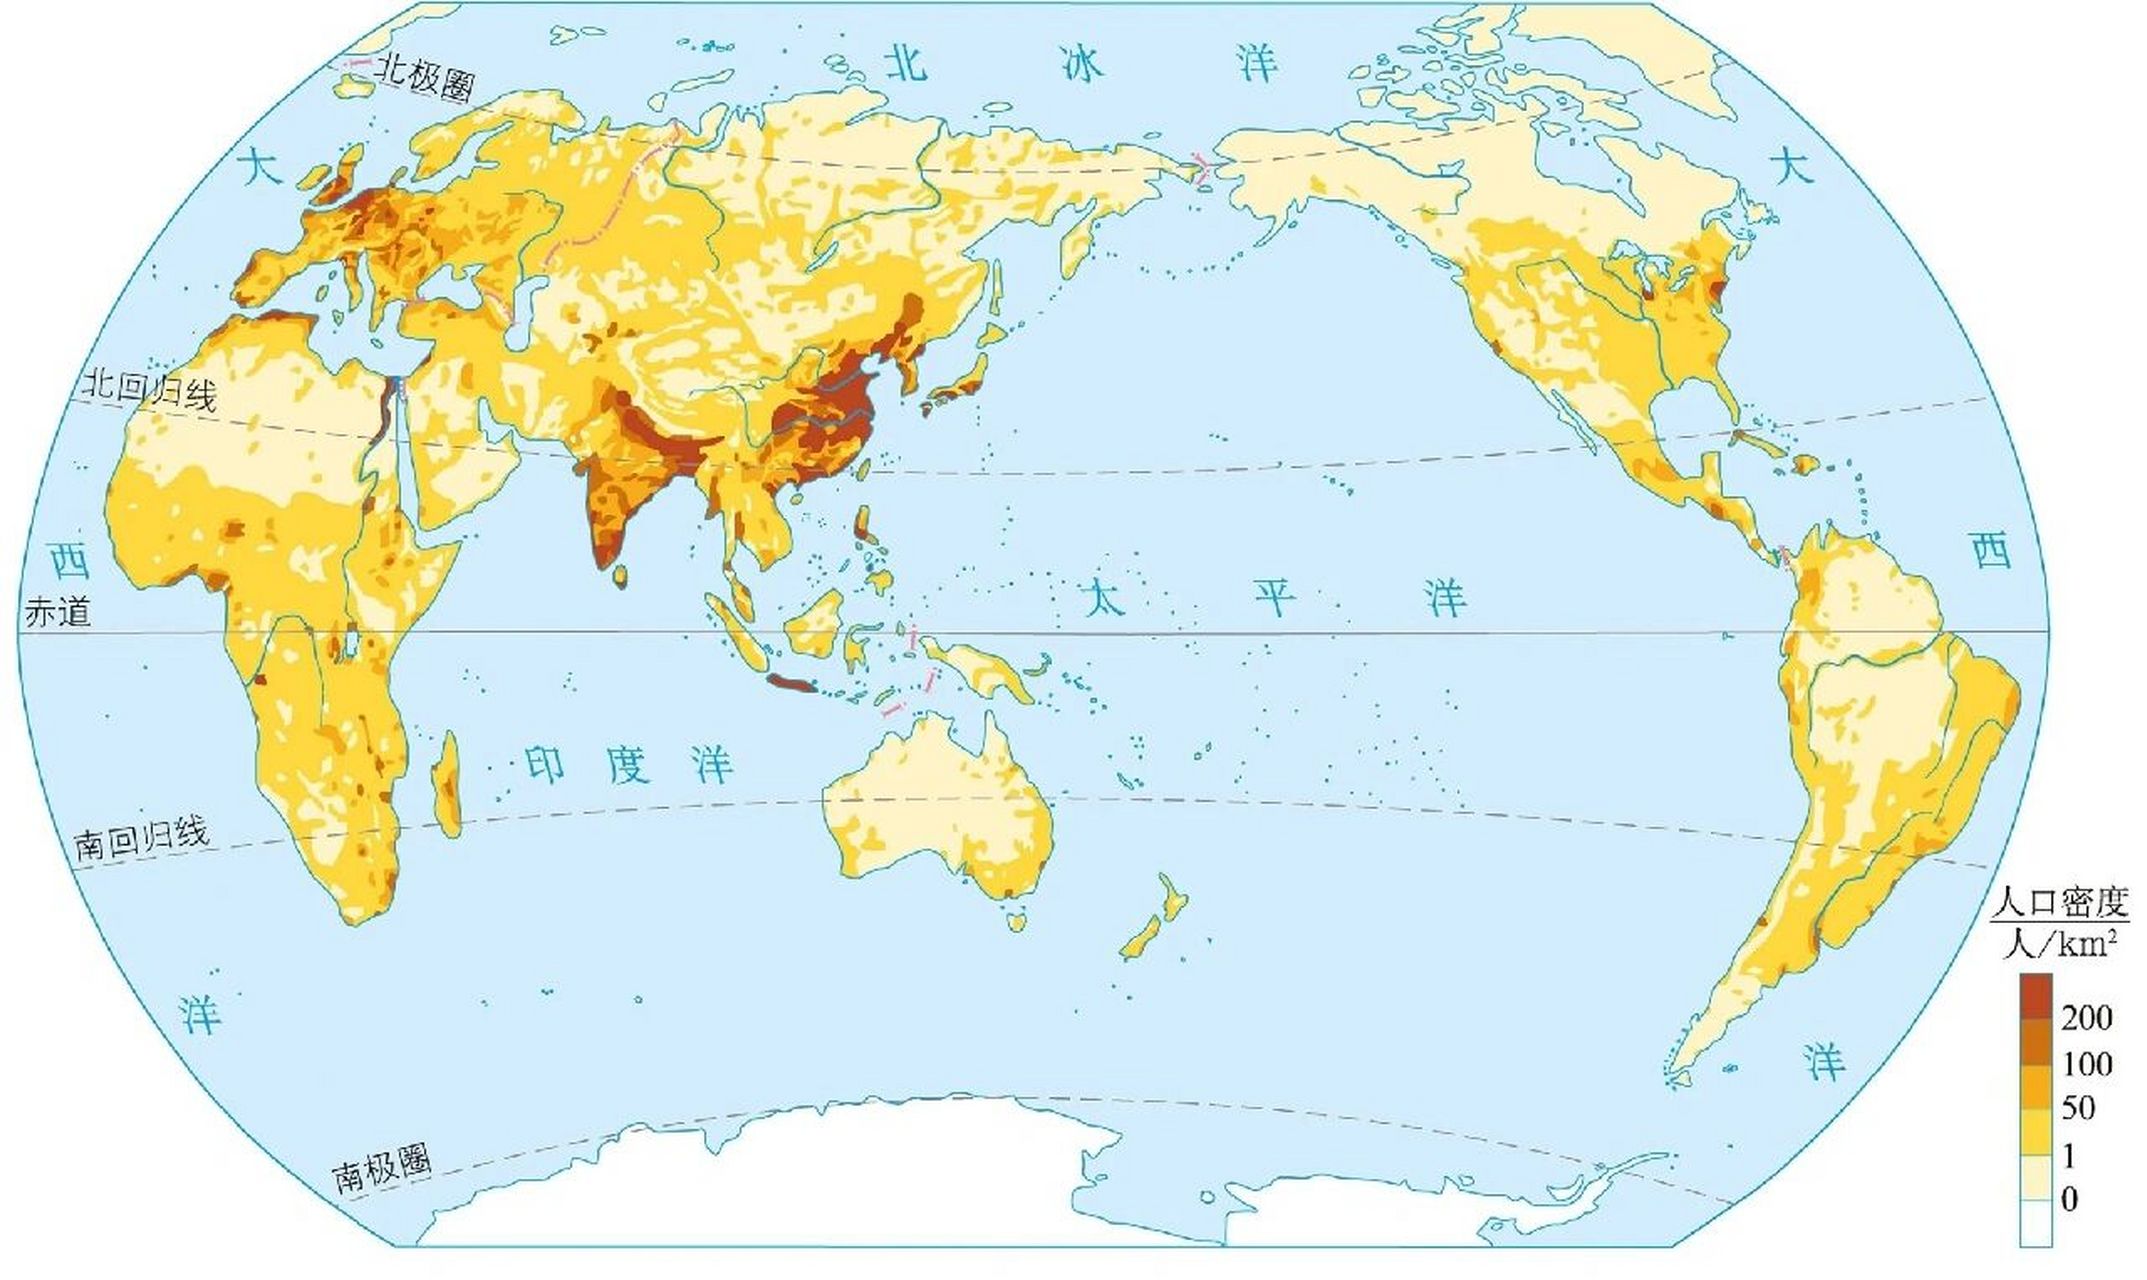 世界人口密度分布图,亚洲实在恐怖